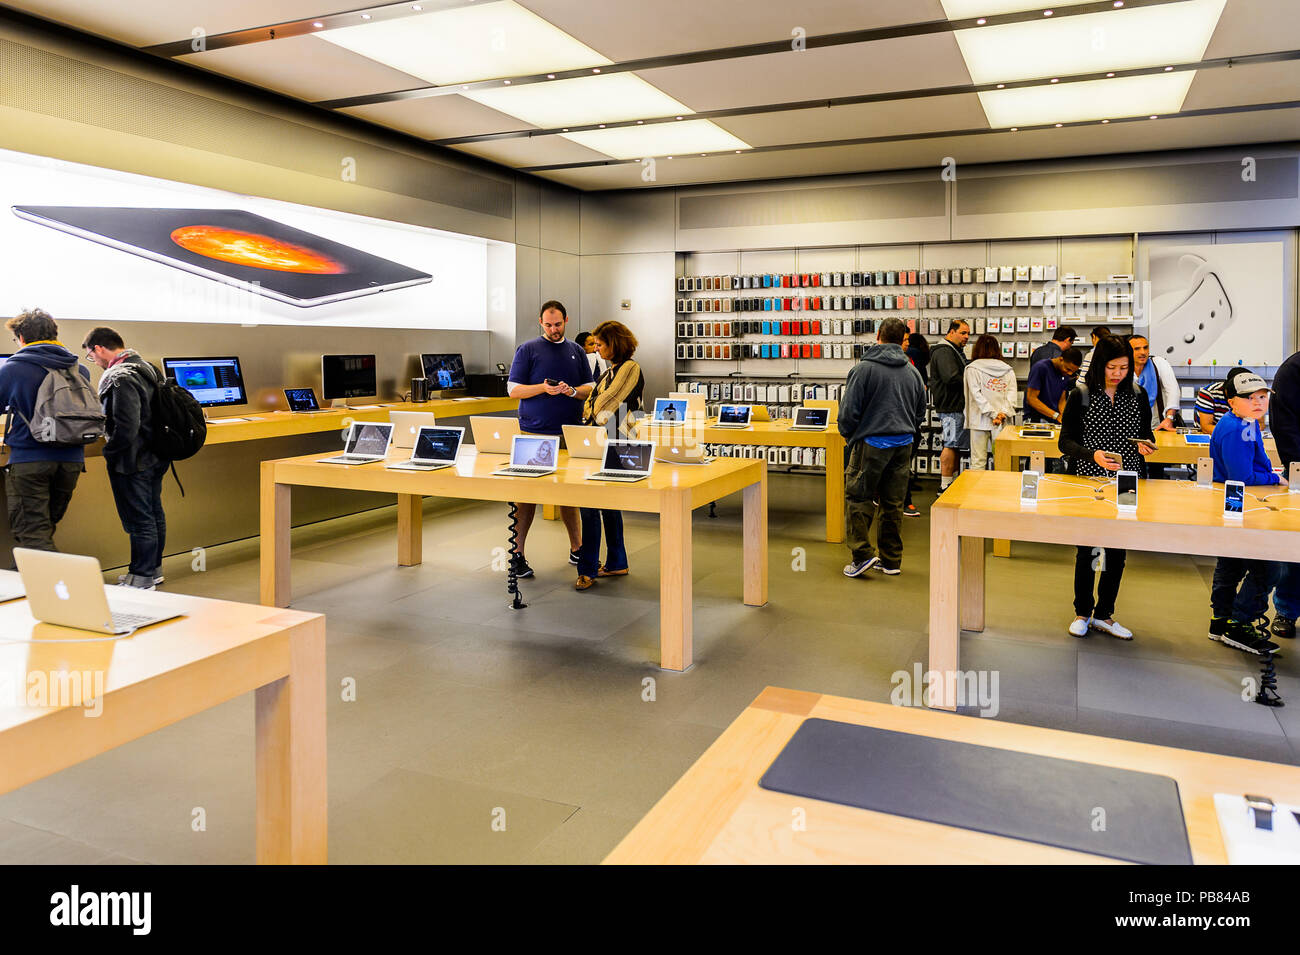 NEW YORK, USA - Sep 22, 2015 : Apple store sur la Cinquième Avenue, New York. Le magasin vend des ordinateurs personnels Macintosh, logiciels, iPod, iPad, iPhone, un Banque D'Images